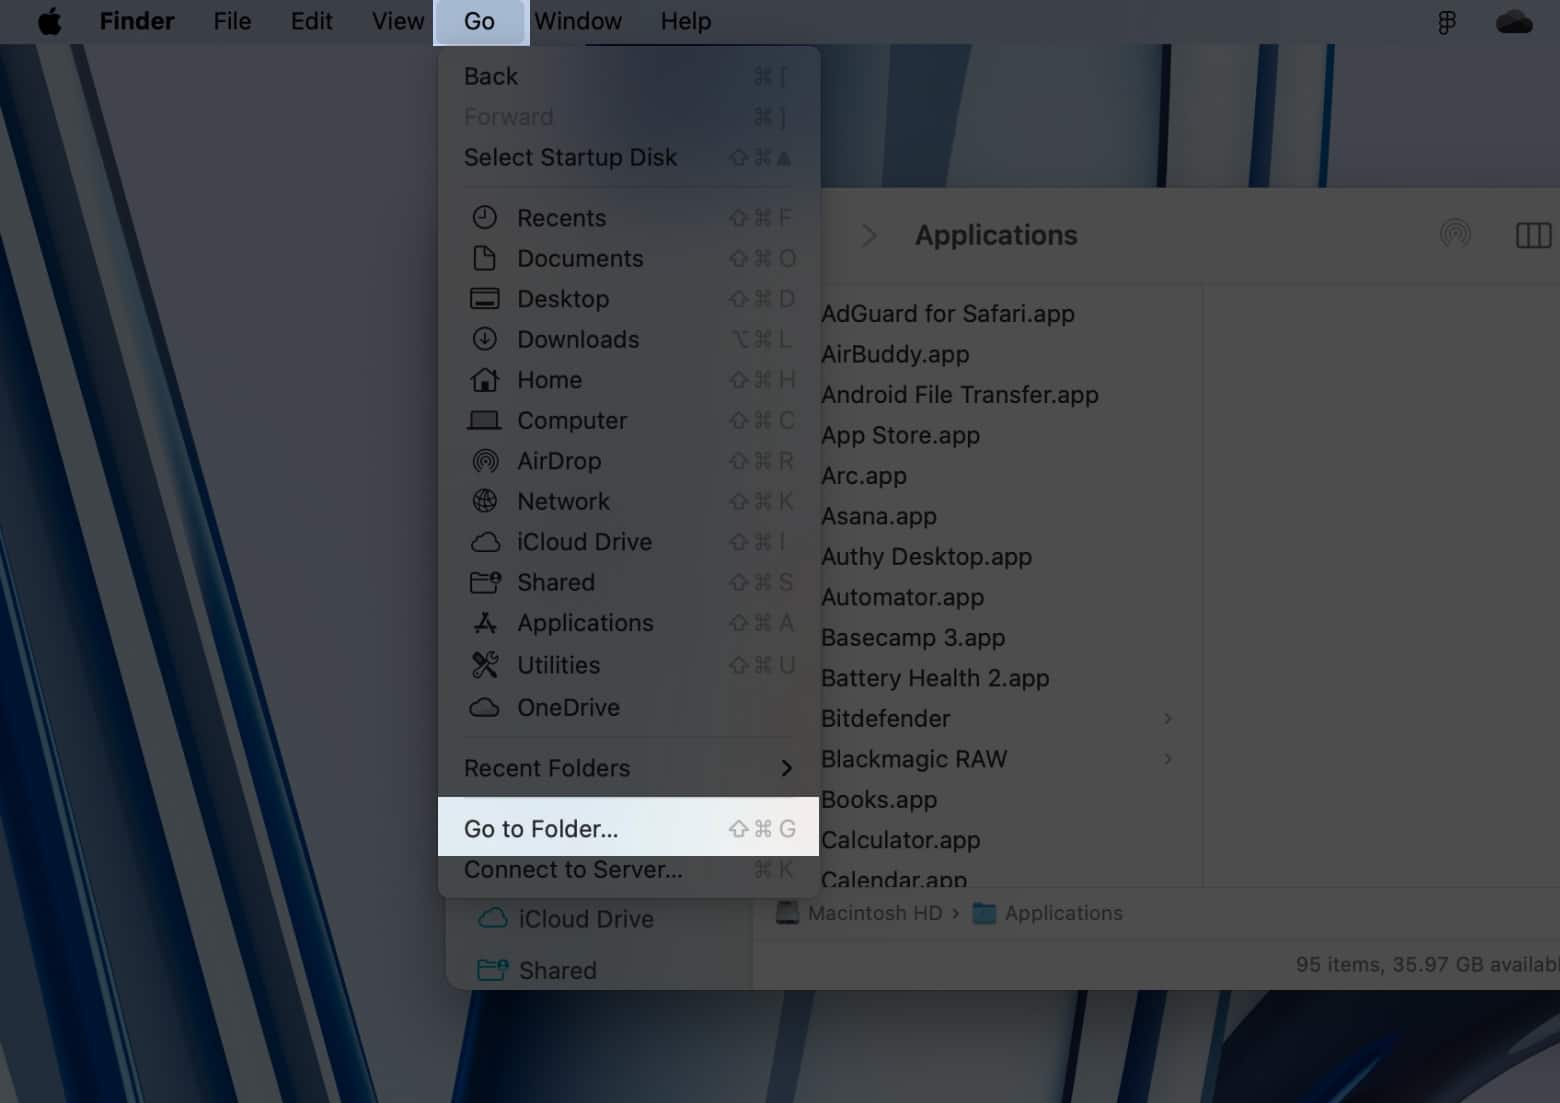 Go to Folder option in Go menu in Finder